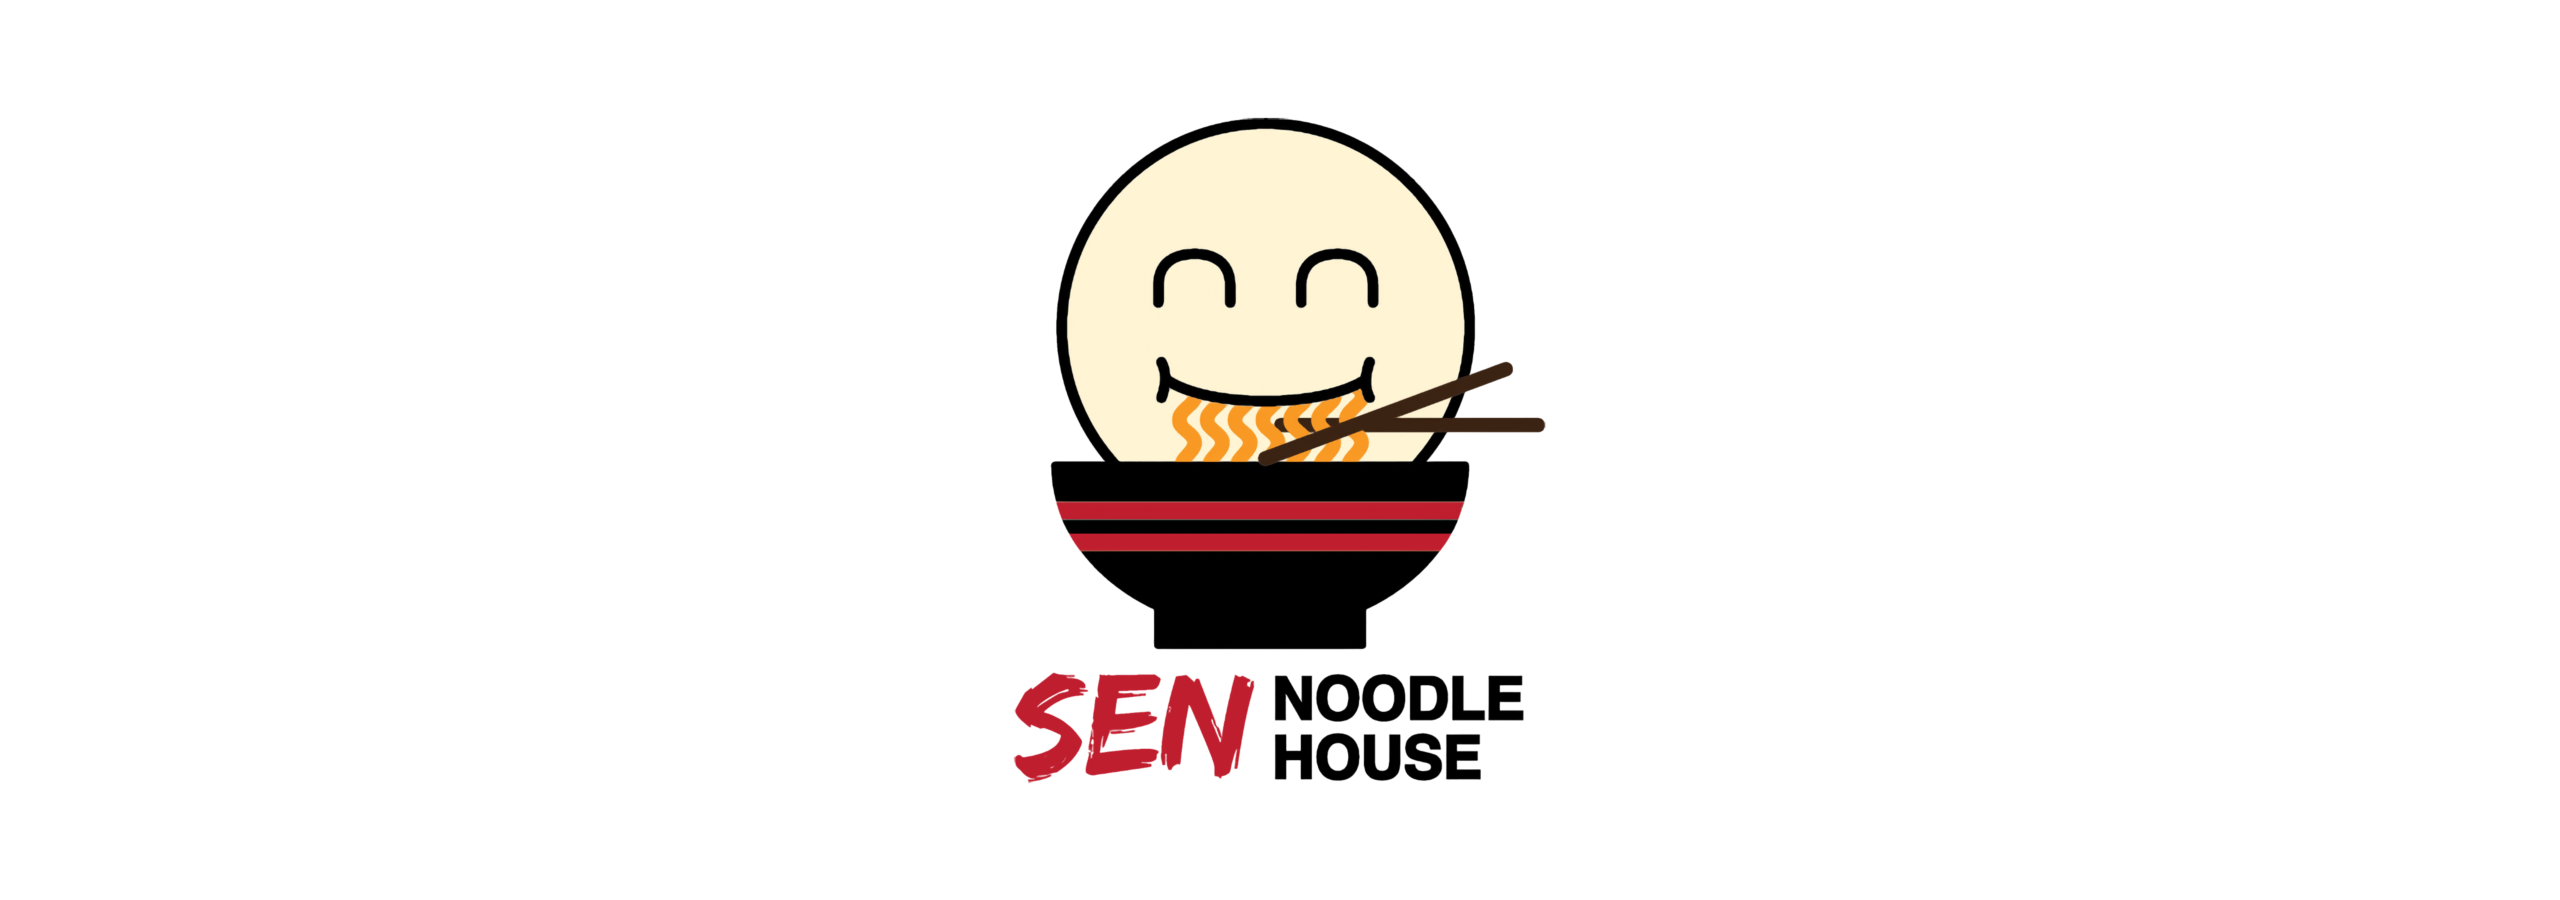 Sen Noodle House